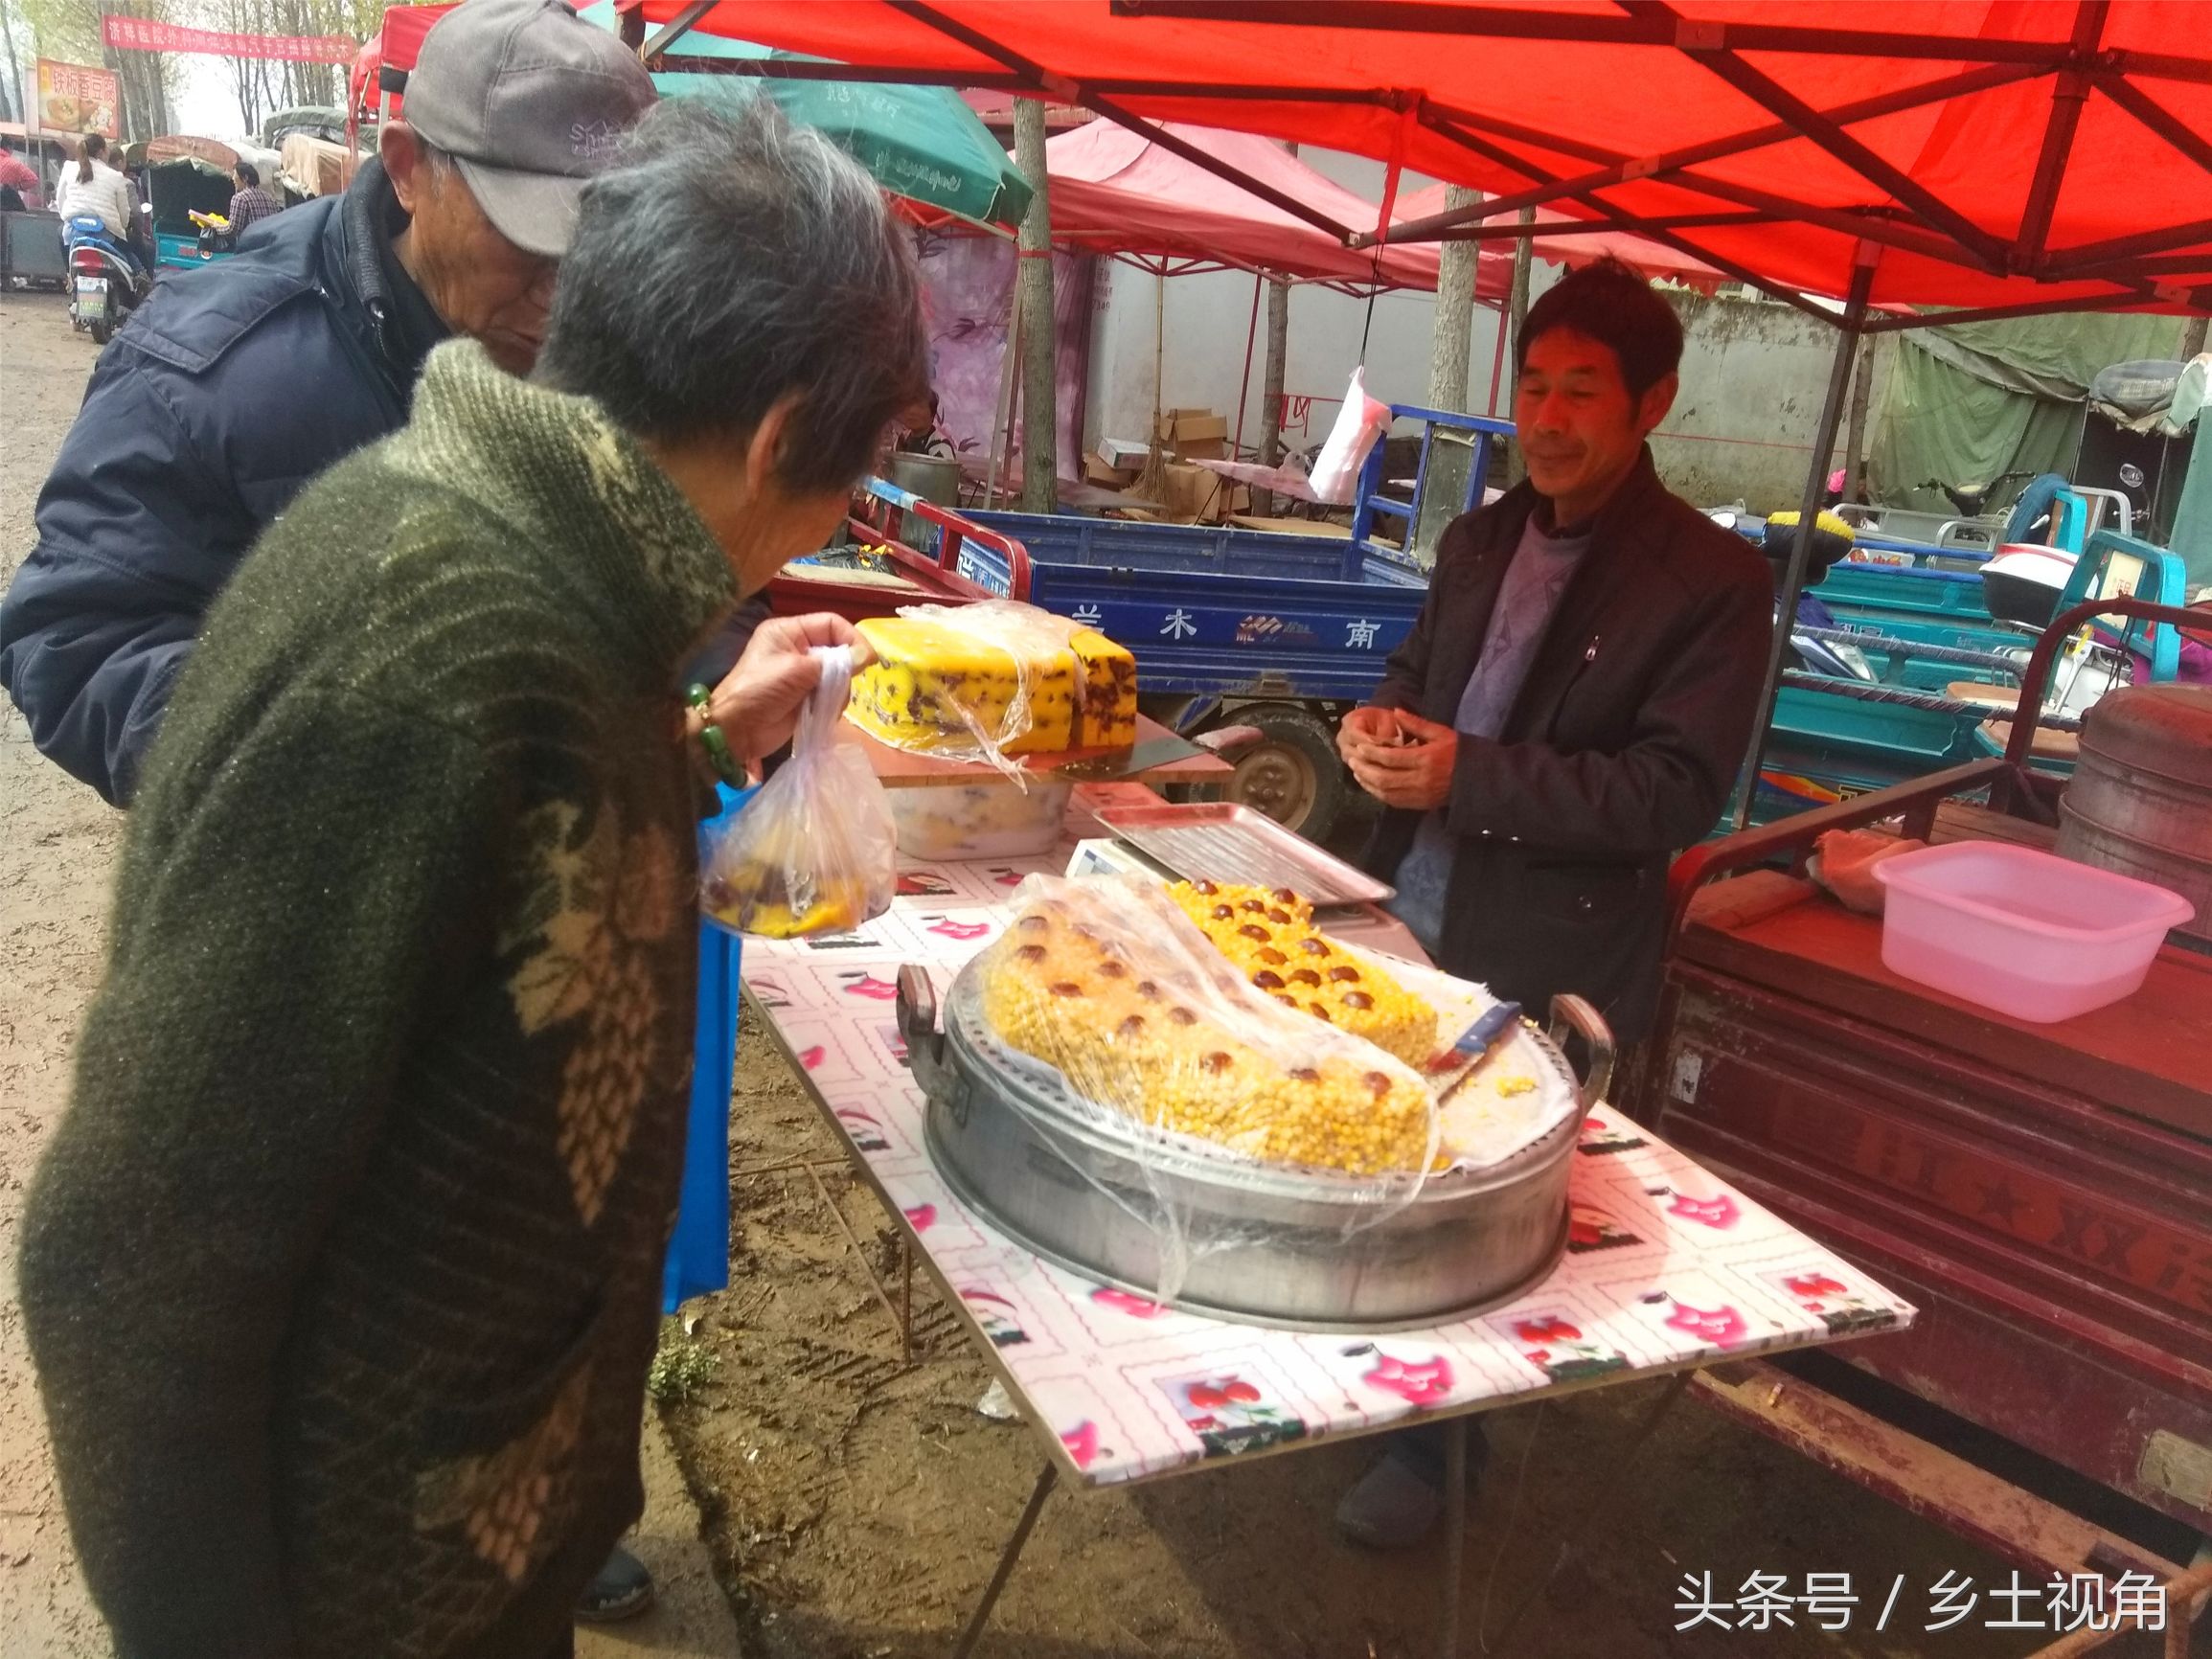 河南农村集市闲逛,卖的小吃简直让人流口水